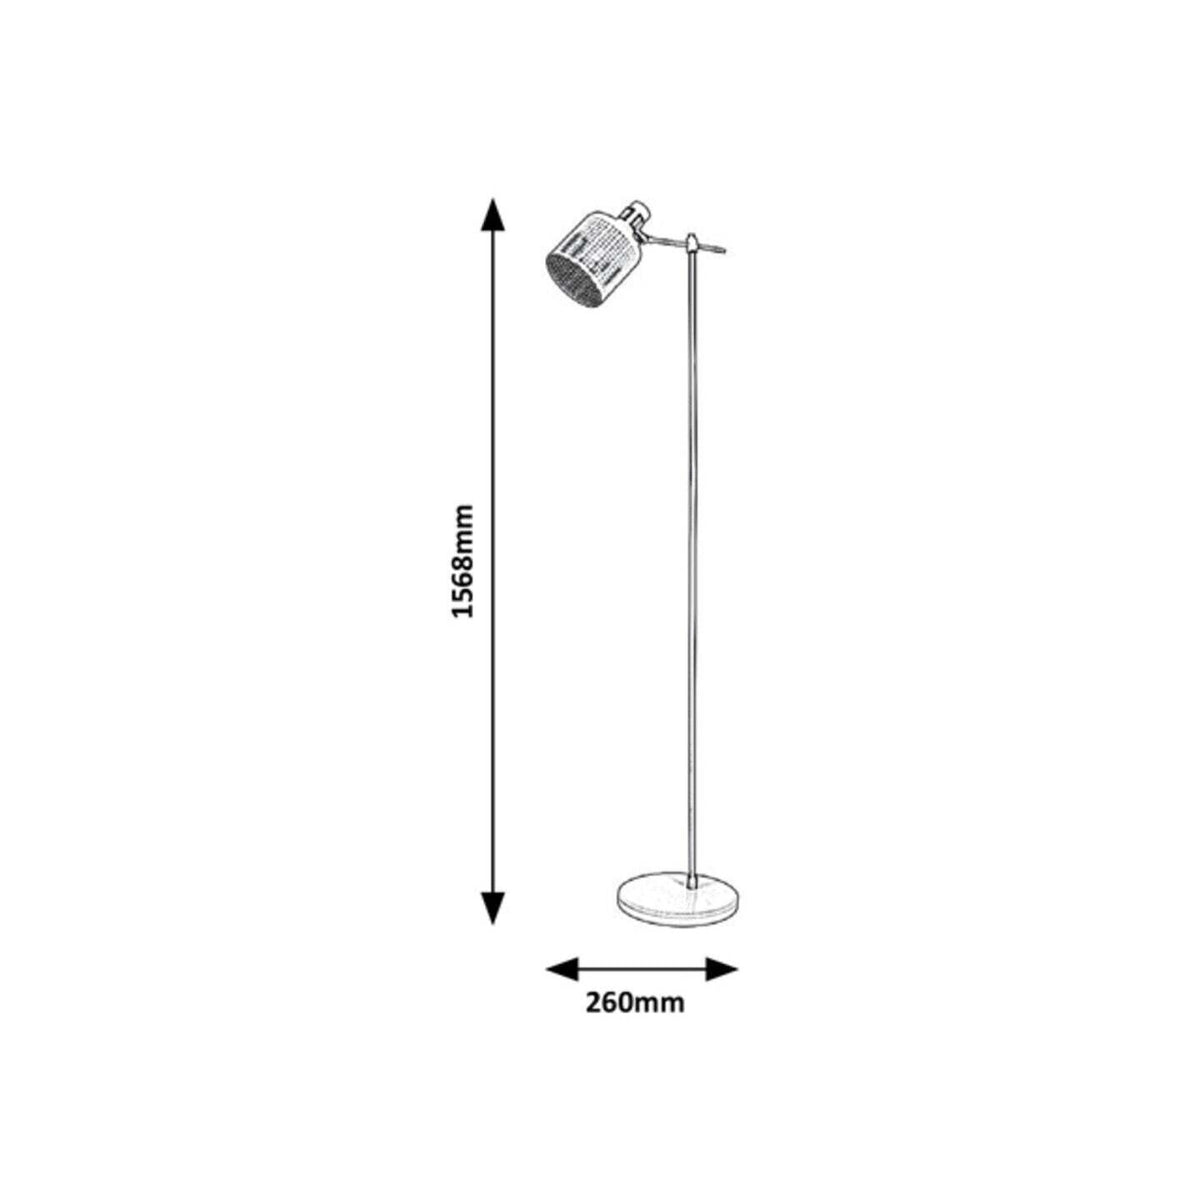 Podlahová industriální lampa, E27 1X MAX 9W, IP20, kov, bílá